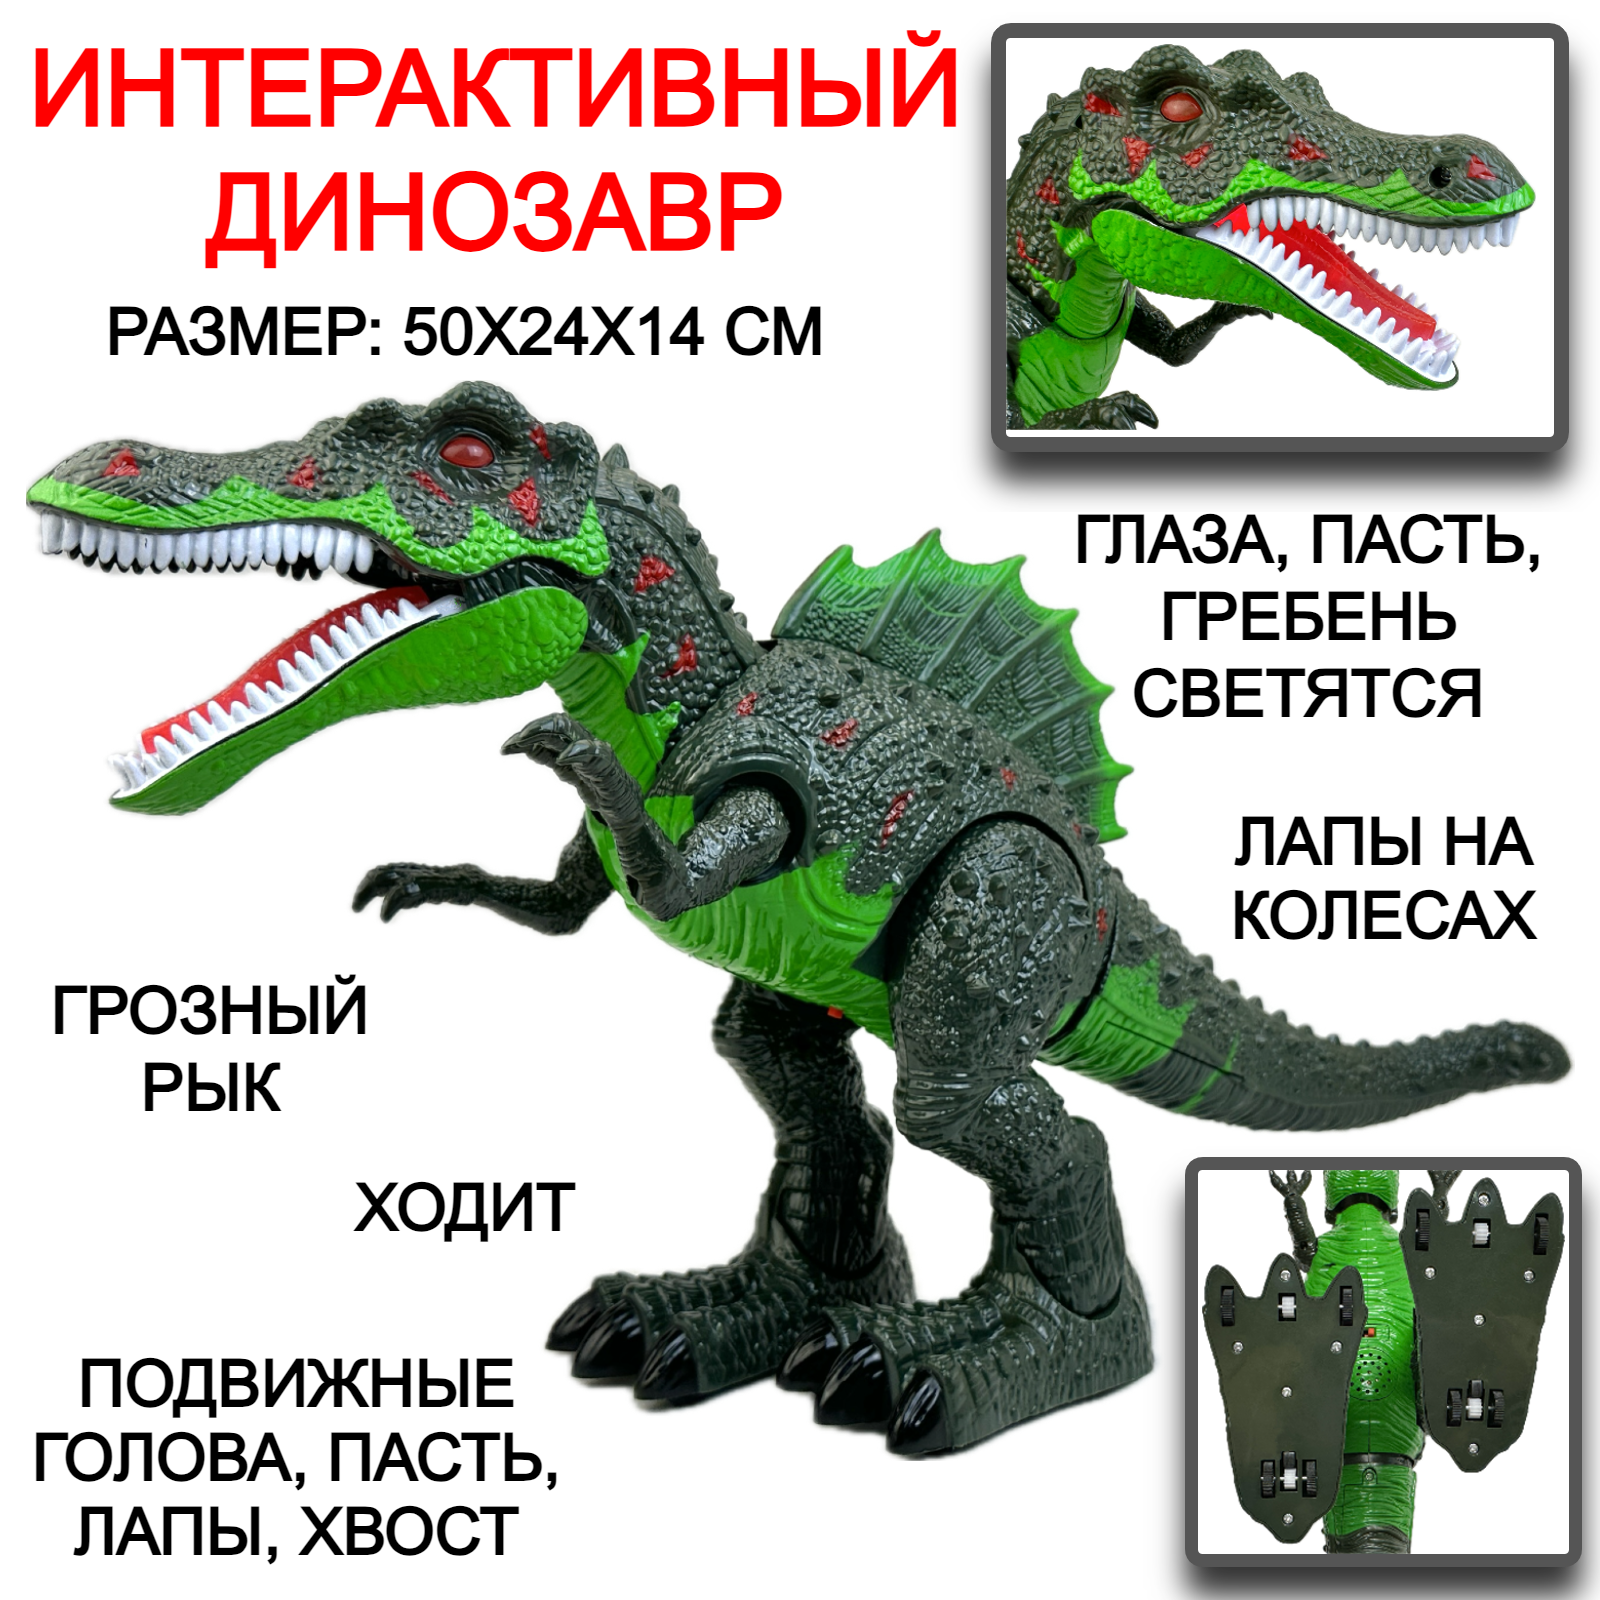 Интерактивная игрушка динозавр Тираннозавр Y333-01, Тирекс, ходит, рычит, подвижная голова, лапы, хвост, глаза и гребешок светятся, 50х24х14 см